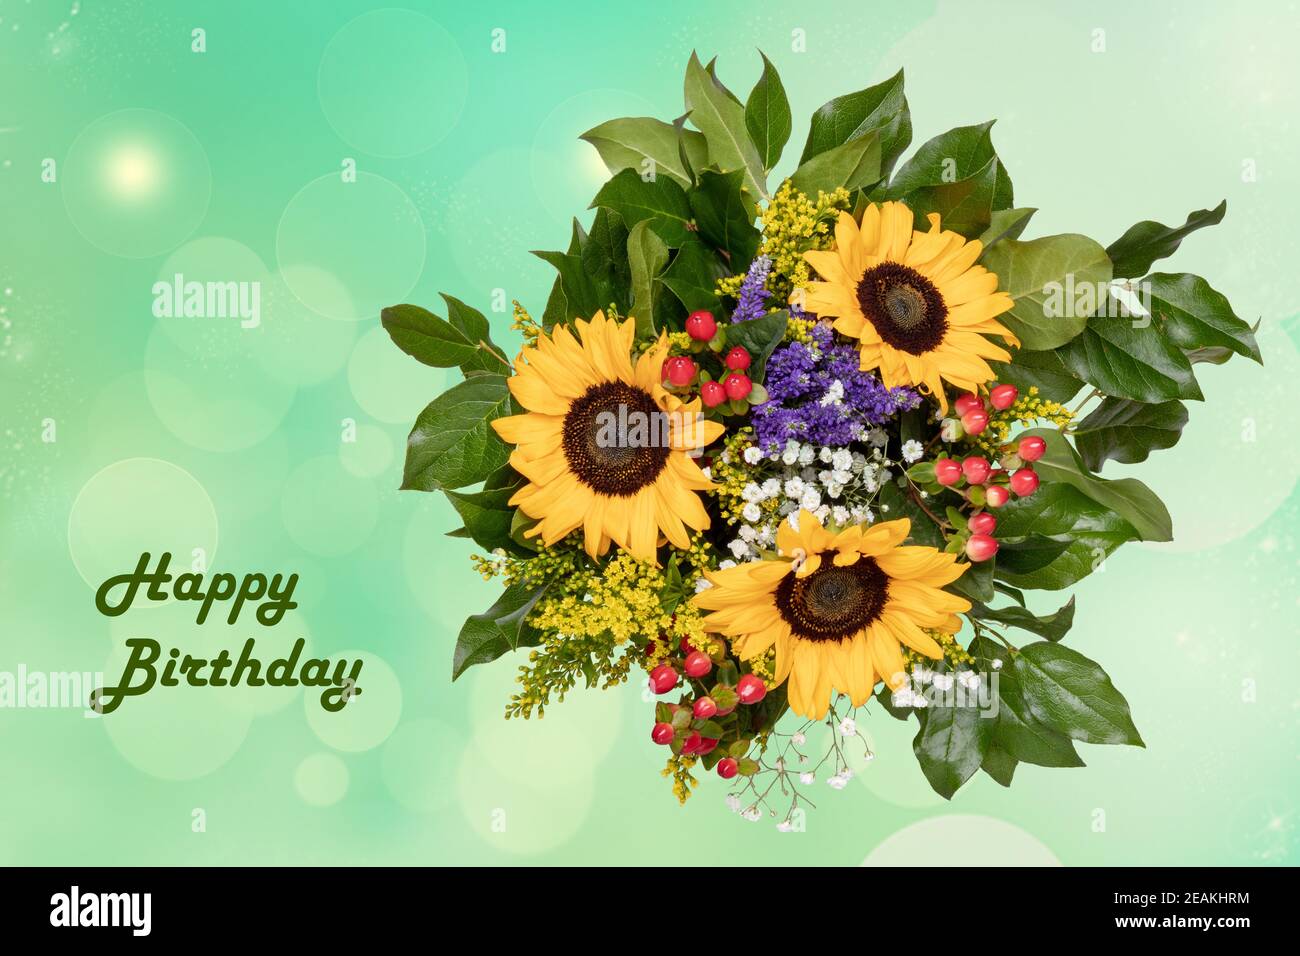 Happy Birthday Karte Design mit einem wunderschönen blühenden Blumenstrauß von Sonnenblumen auf einem hellen abstrakten zarten Pastellgrün verschwommen Hintergrund. Stockfoto